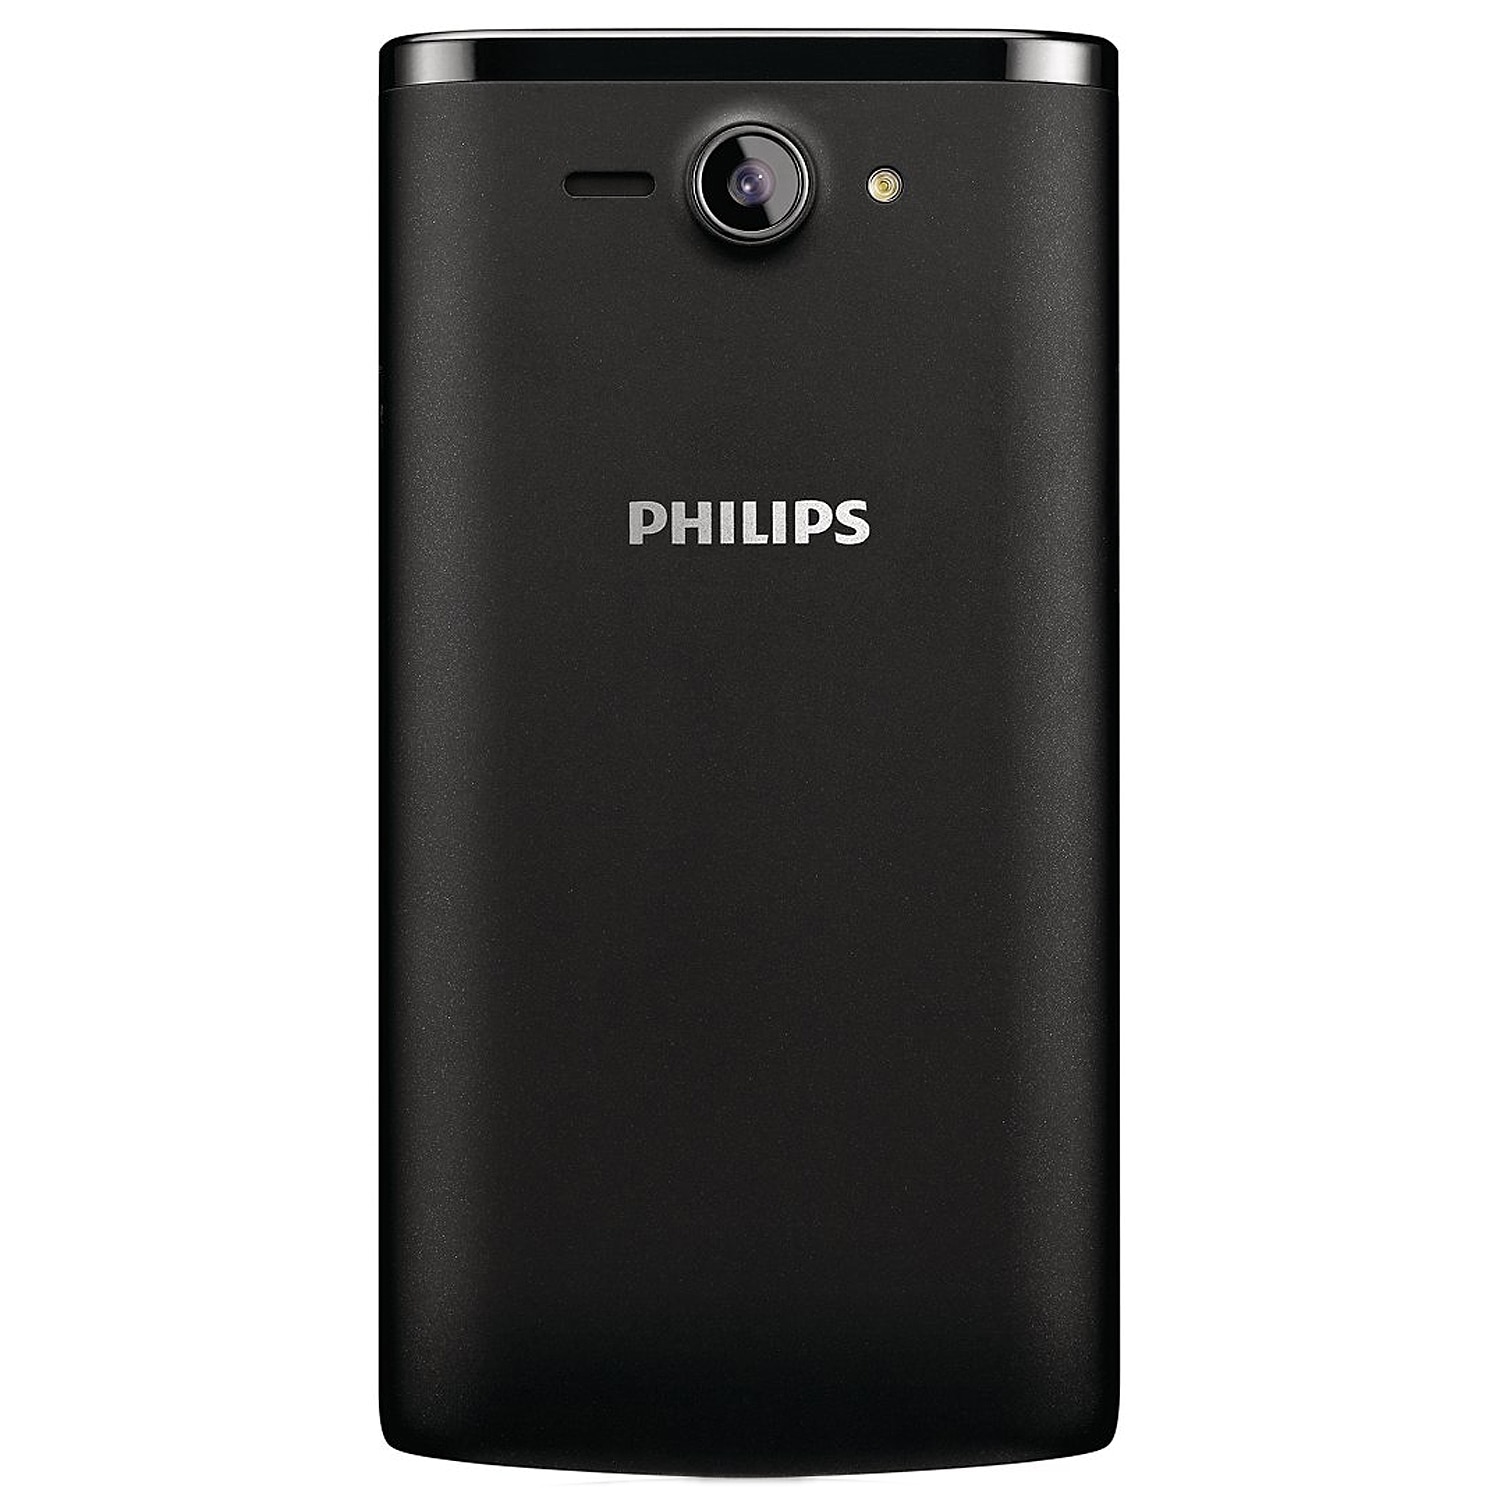 Филипс v. Philips s388. Philips Xenium s388. Philips Xenium w3500. Philips Xenium s266.